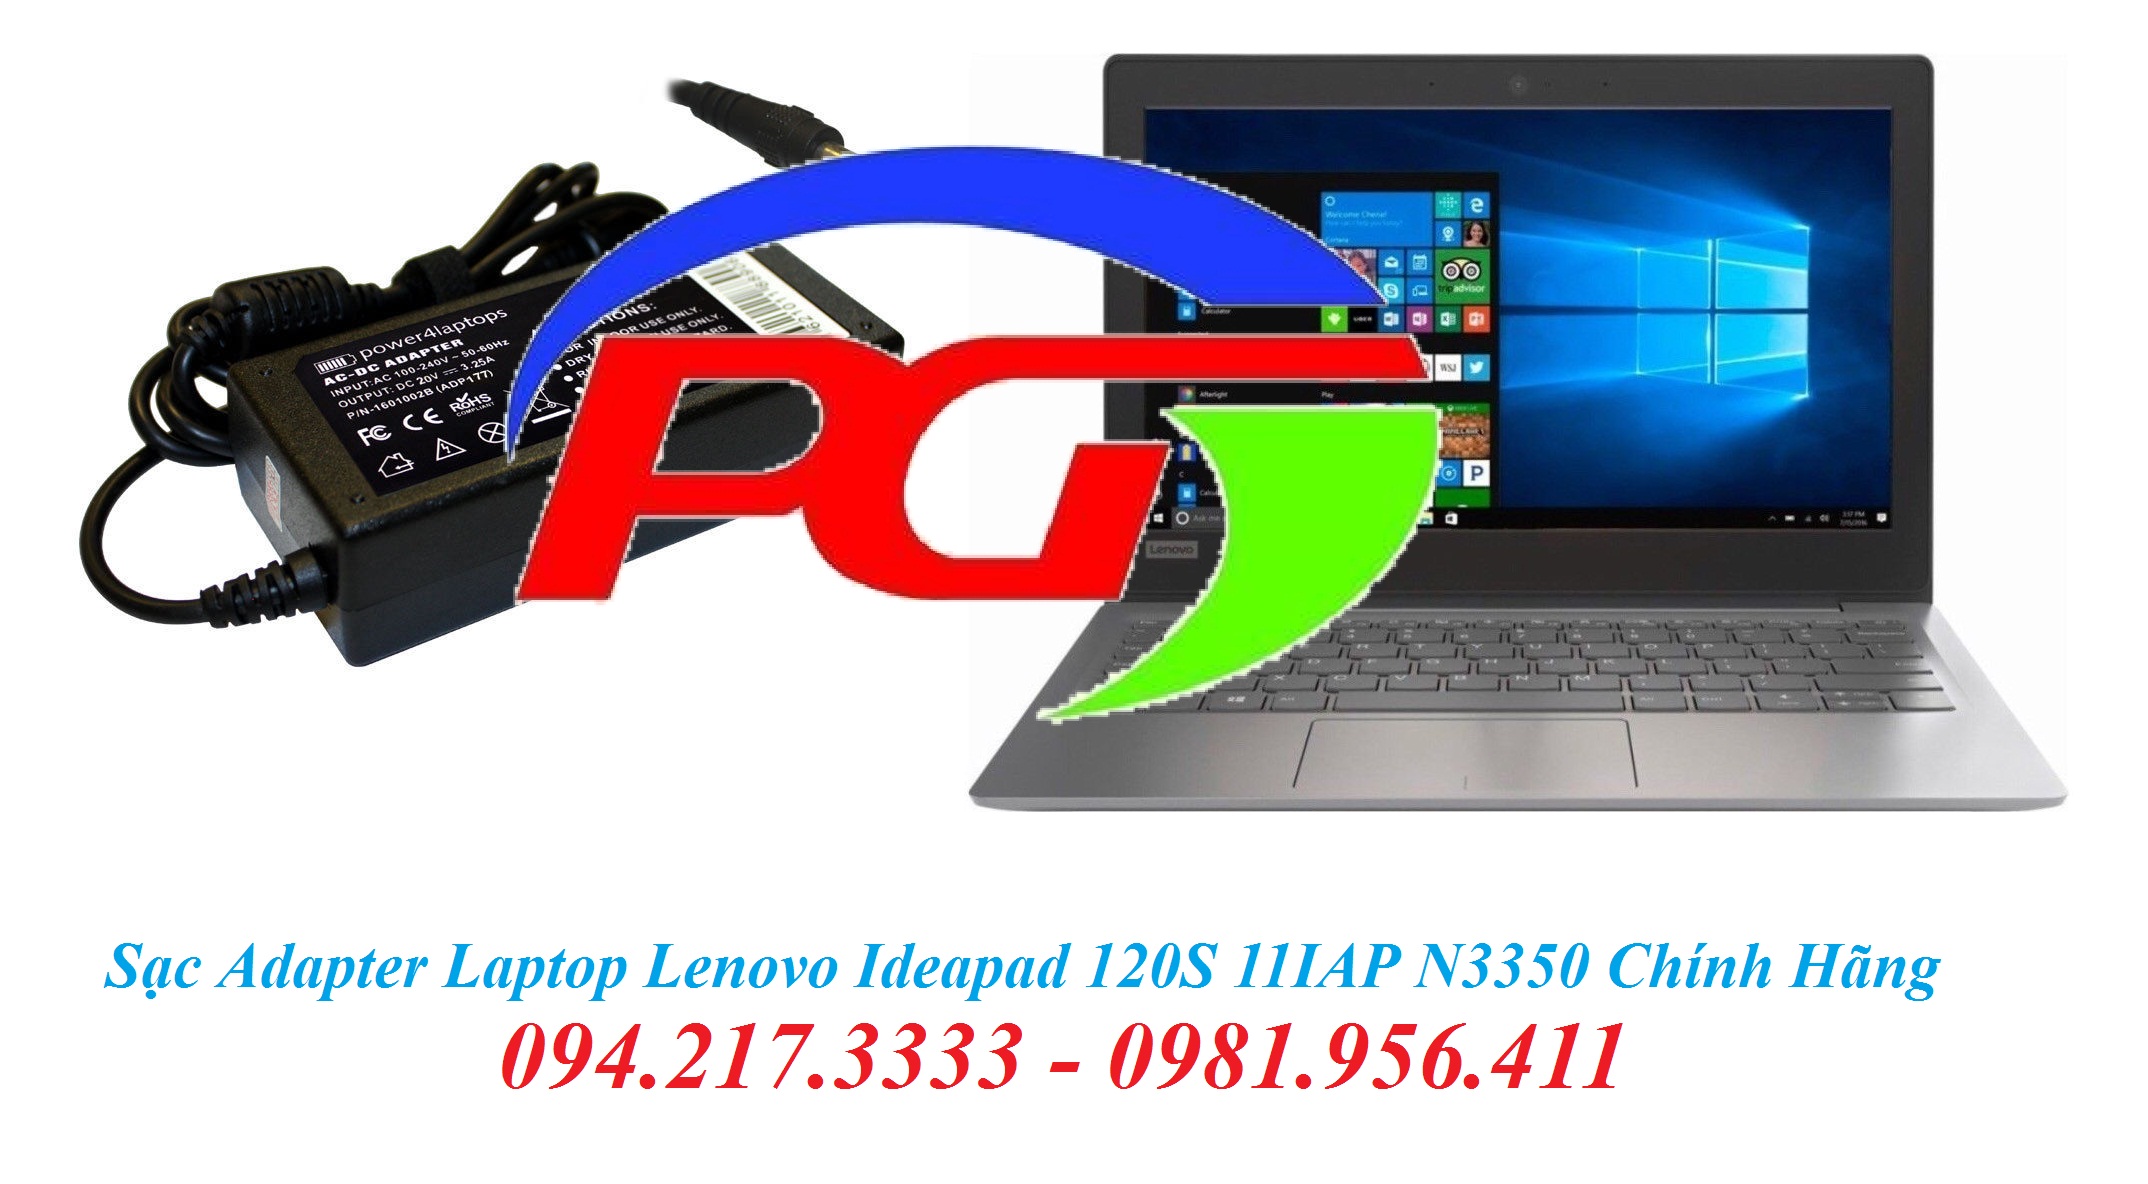 Mua Bán Sạc Adapter Laptop Lenovo Ideapad 120S 11IAP N3350